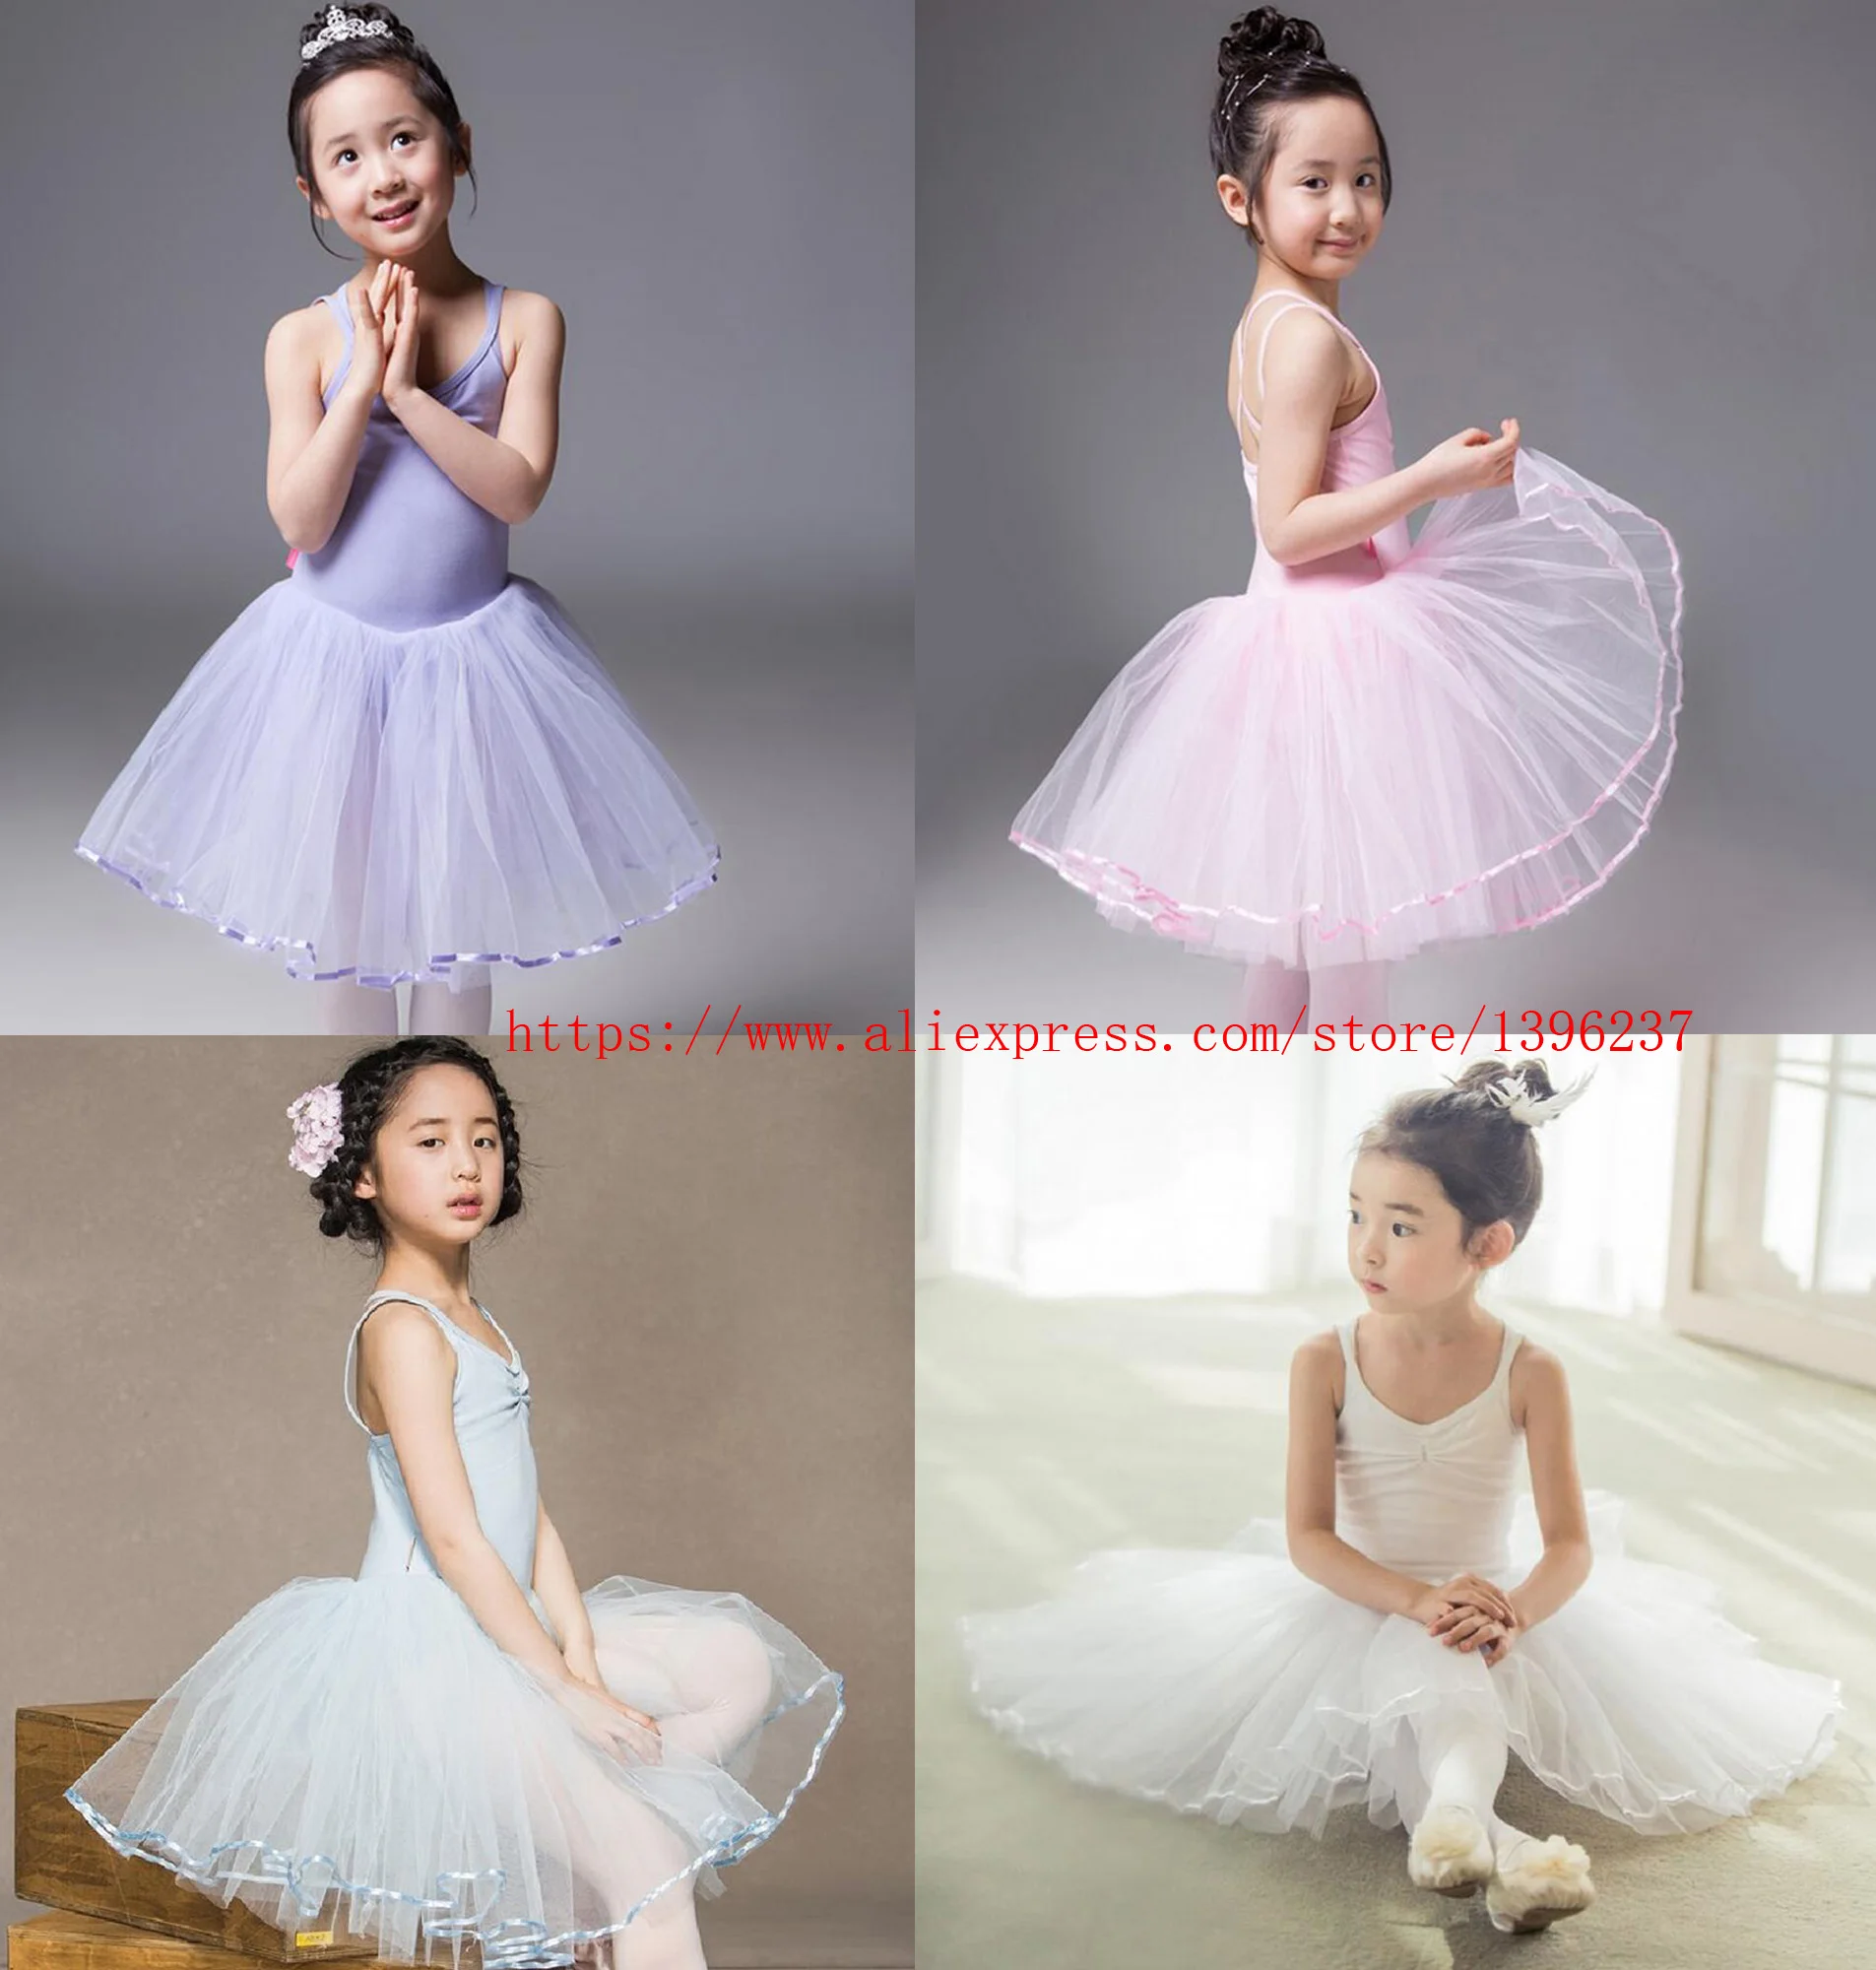 Ballet Dancing Dress Girls 2021 New Daily Exercise Vest Leotard High Quality Cotton Ballet Tutu Children White Dance Skirt